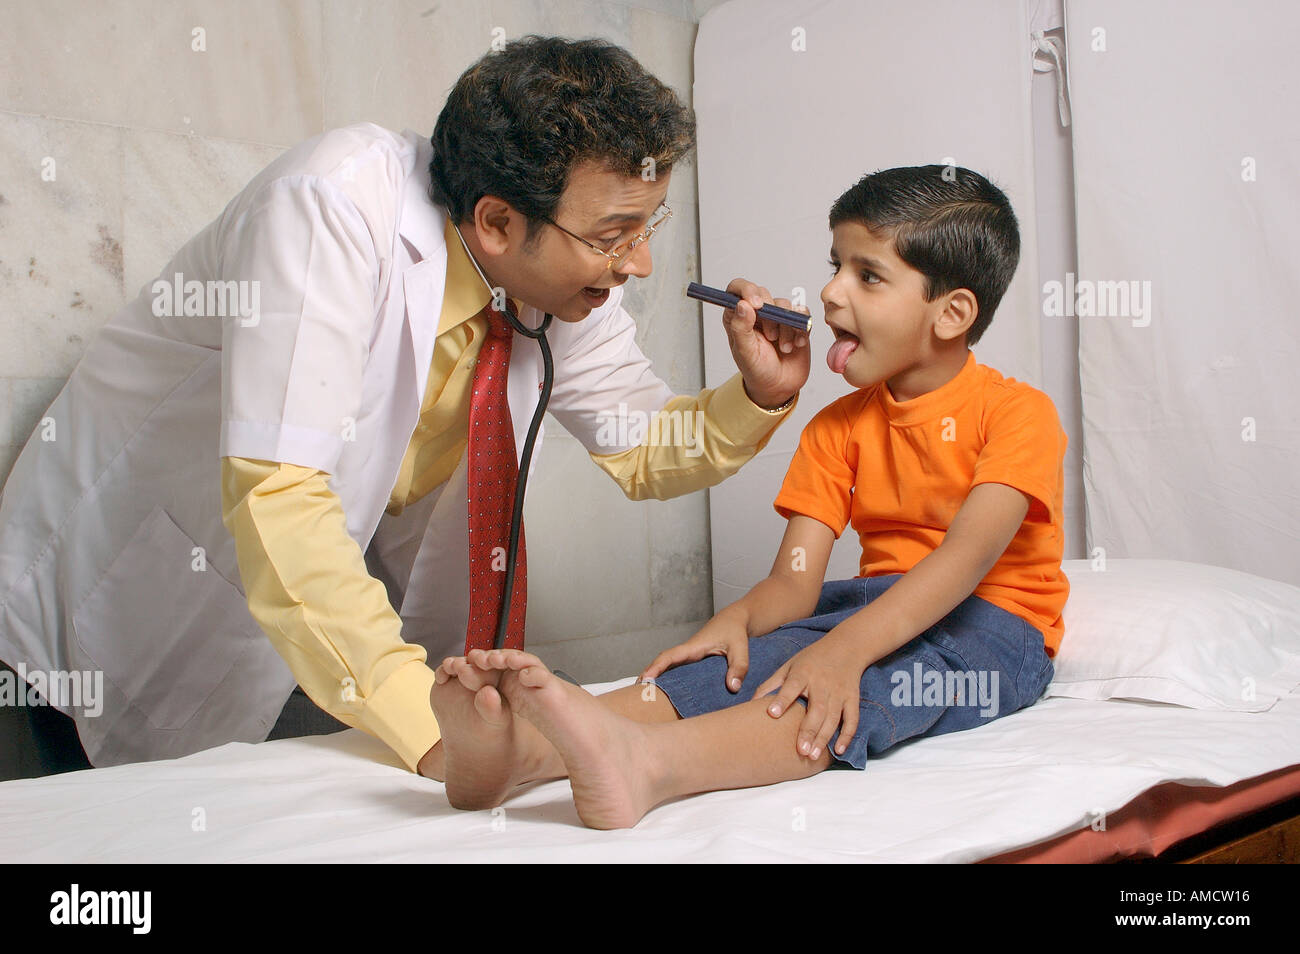 Indischer Doktor, der Kehle des kleinen Jungen mit Fackel überprüft, MR#560&637 Stockfoto